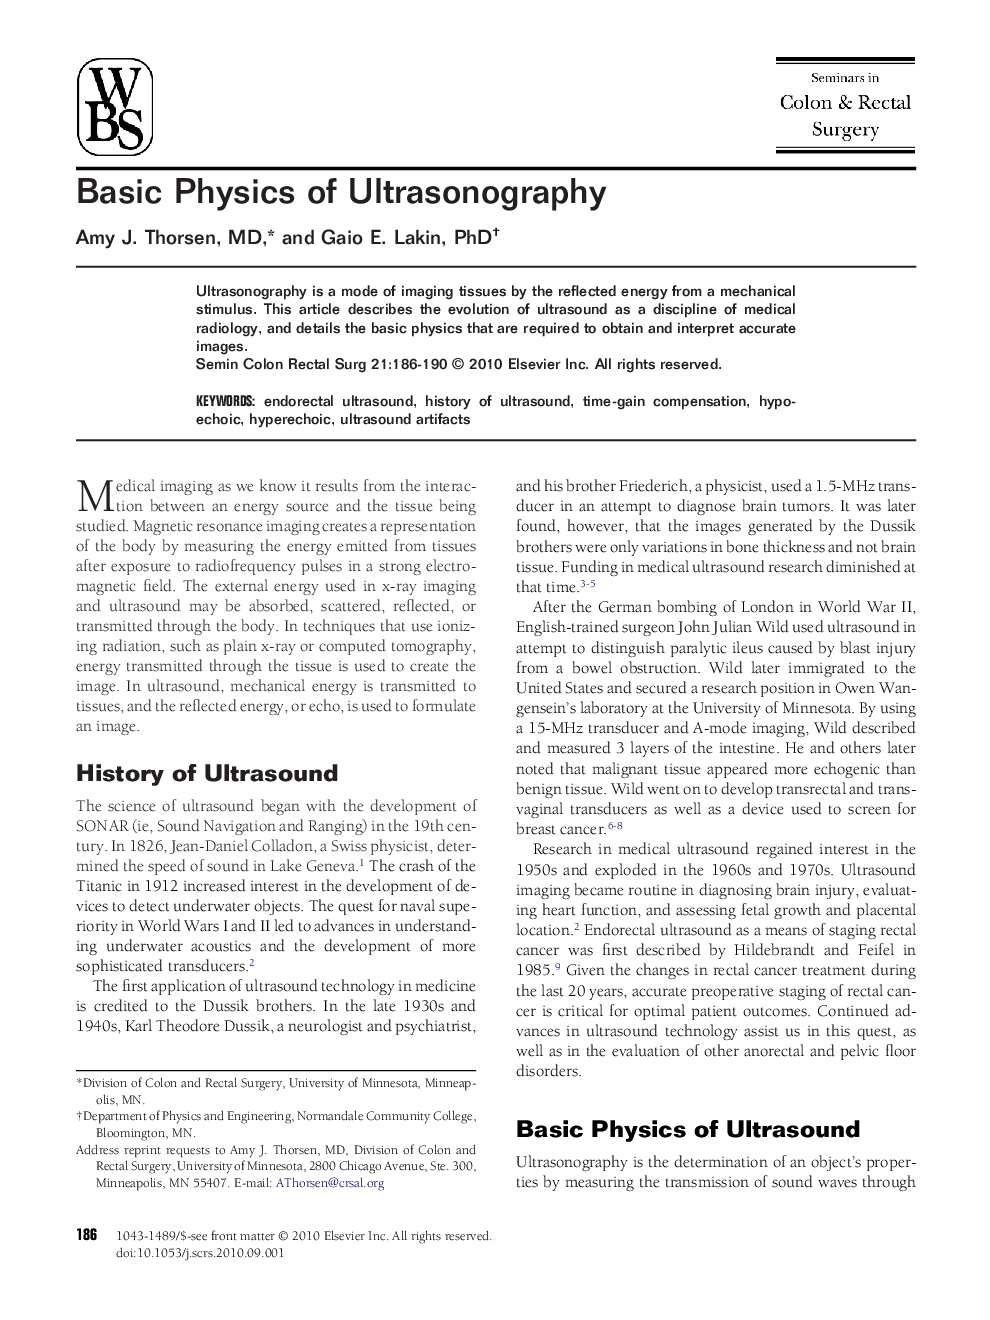 Basic Physics of Ultrasonography